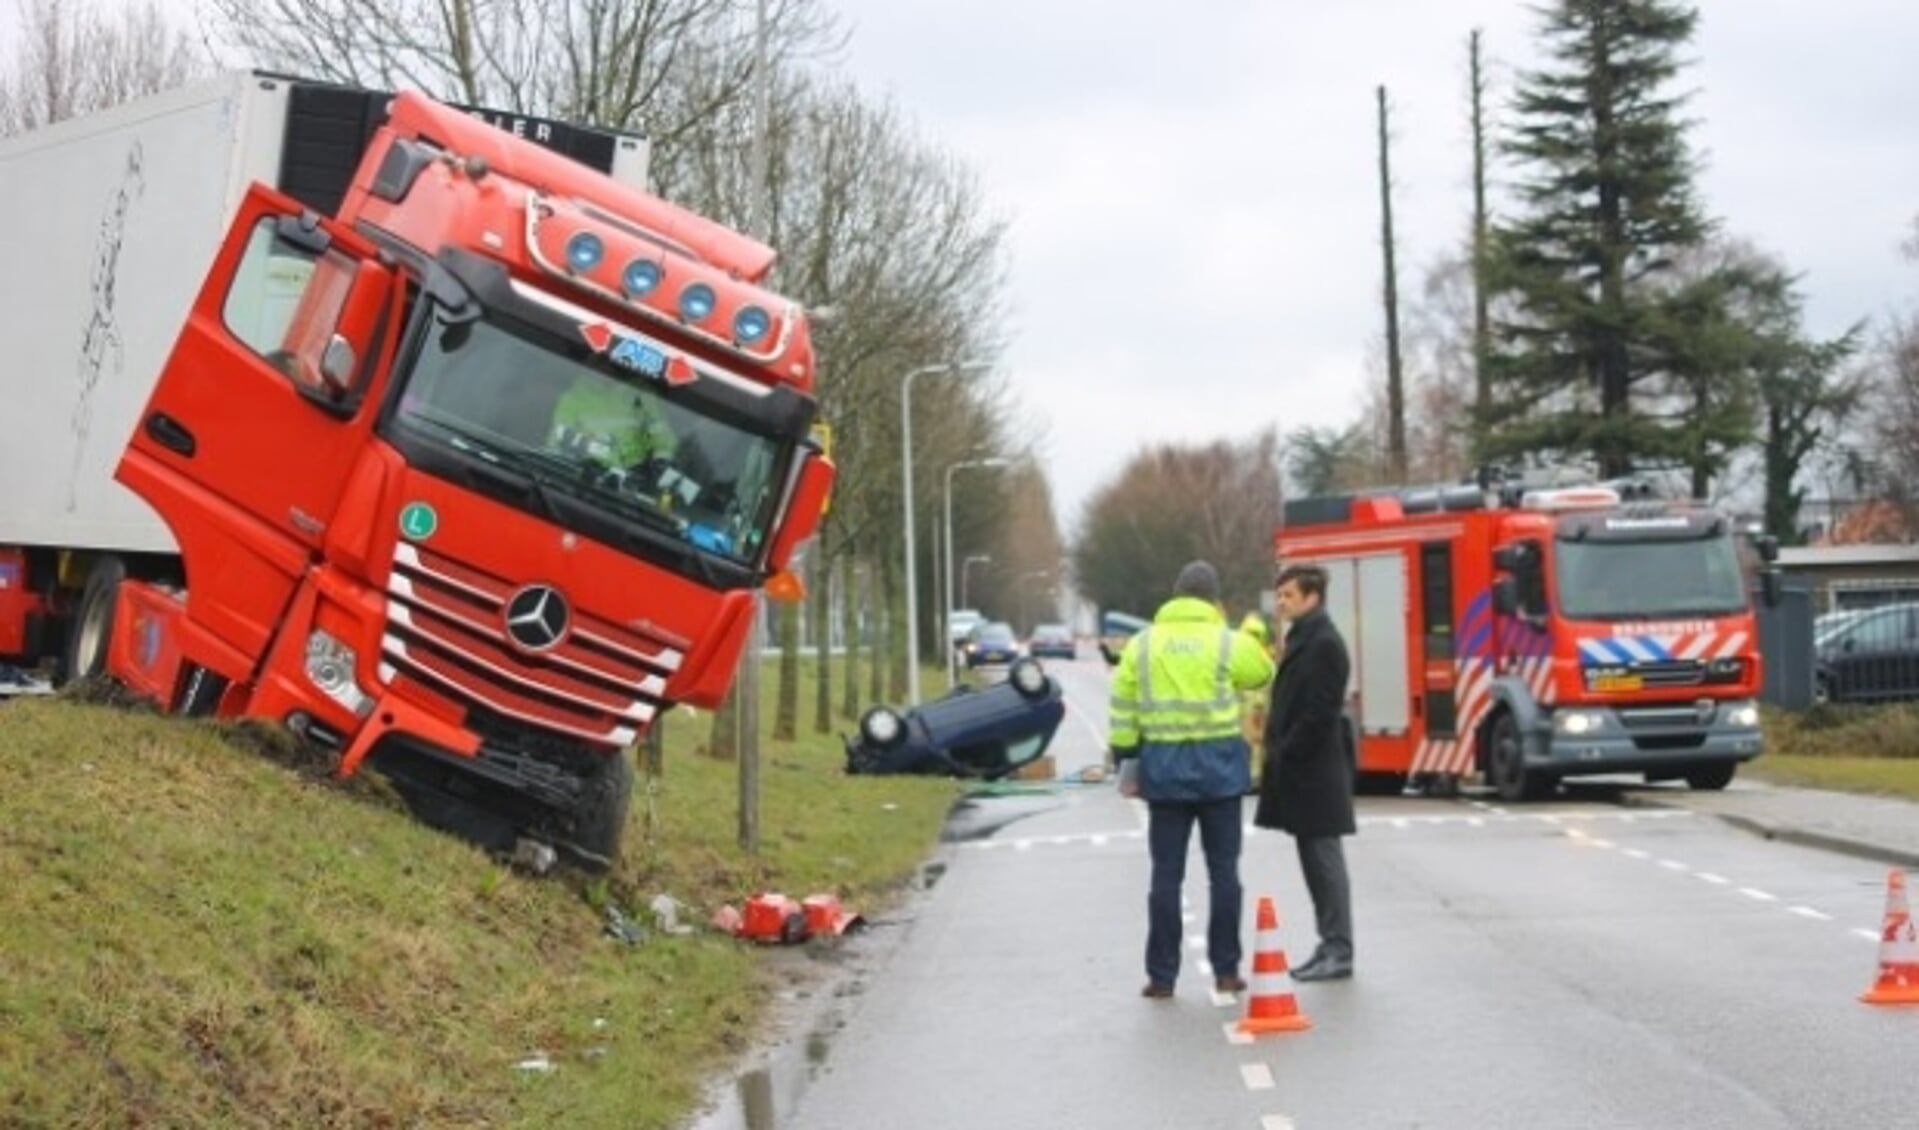 In maart dit jaar vond een dodelijk ongeval plaats op de weg. (Foto: archief/Spa Media)